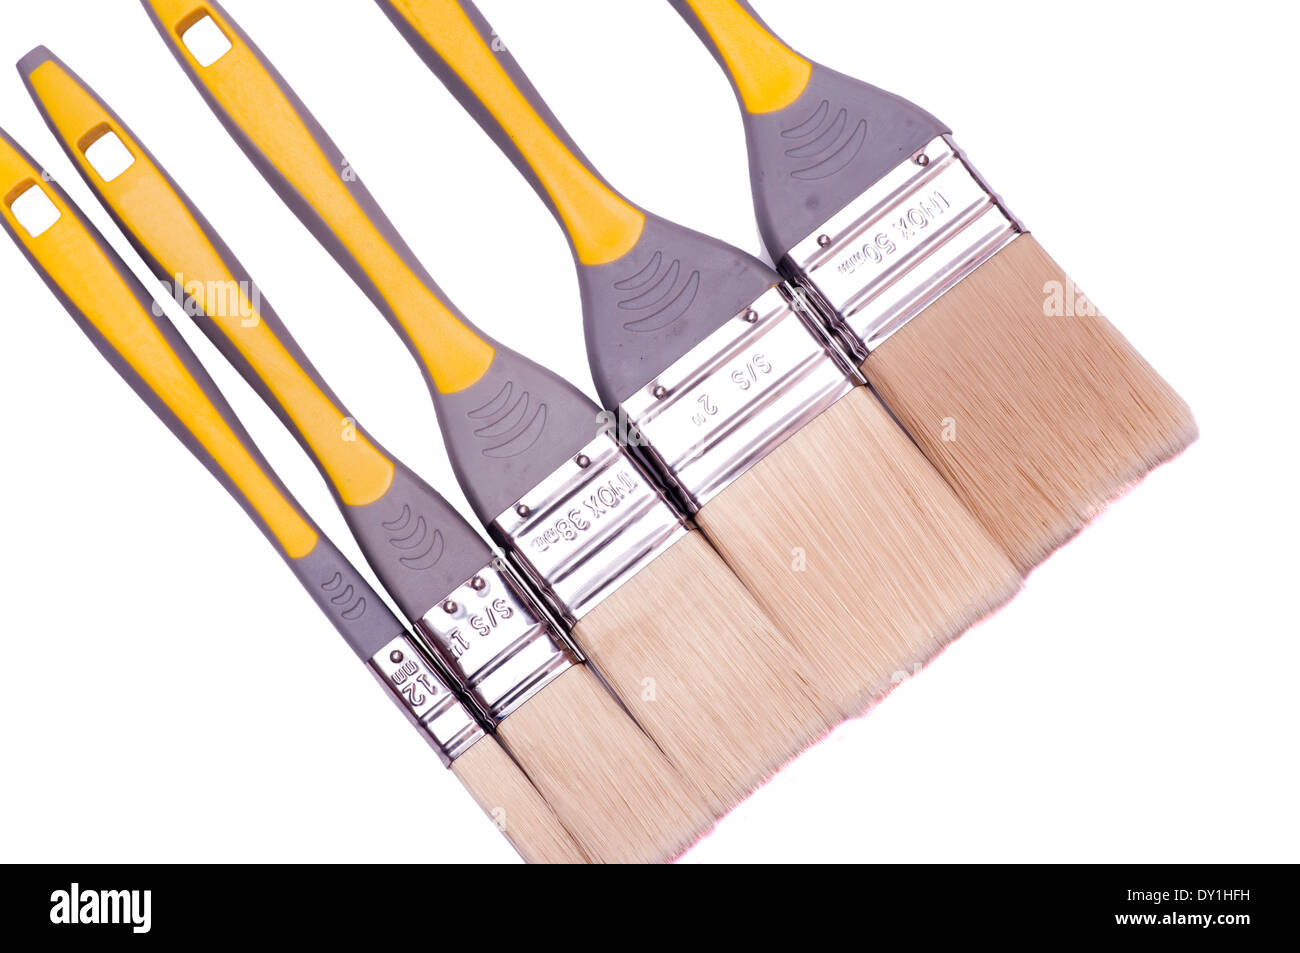 set of paintbrushes Stock Photo